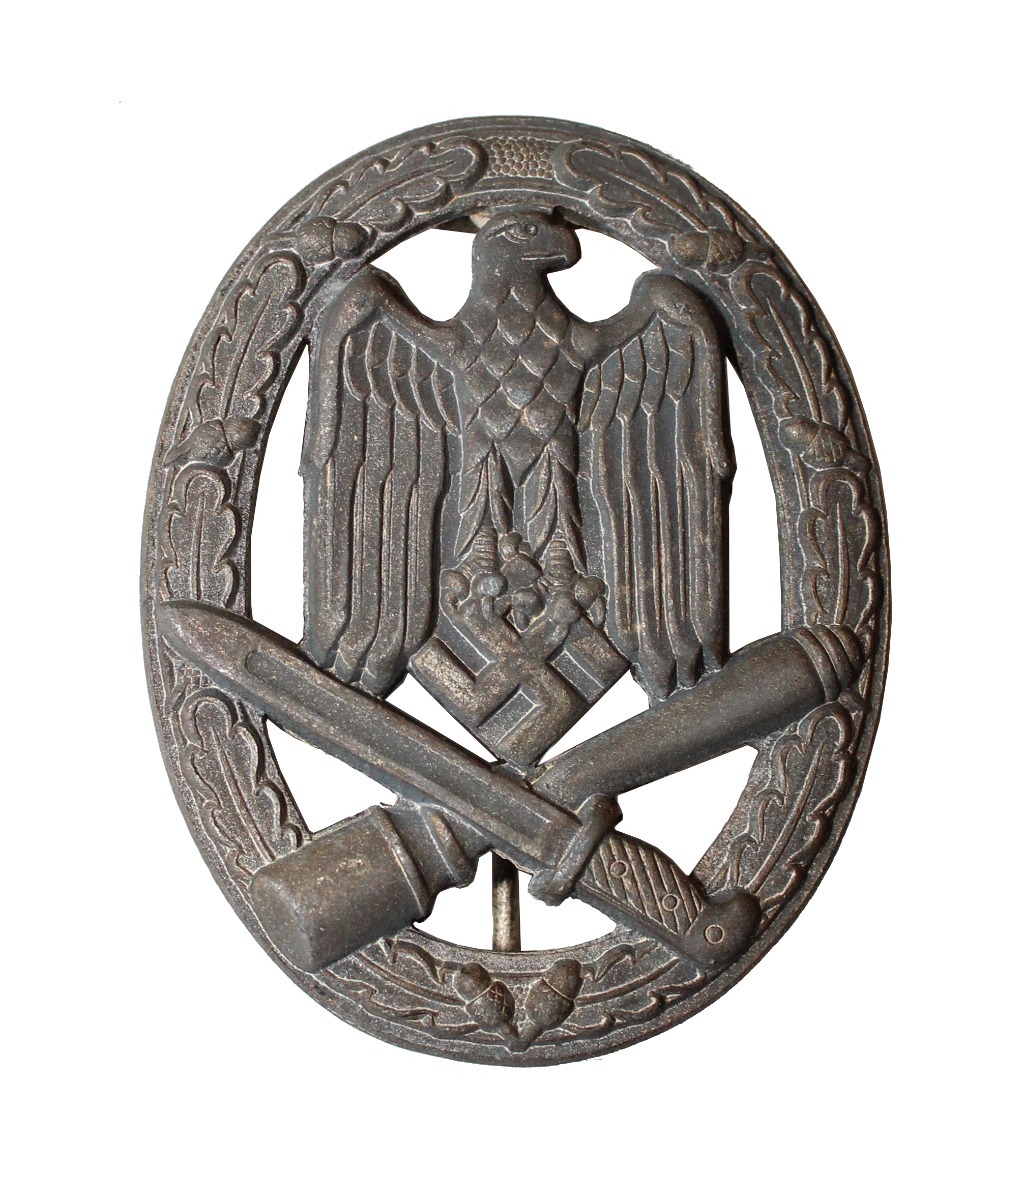 GERMAN WWII GENERAL ASSAULT BADGE, HOLLOW BACK (ALLGEMEINES STURMABZEICHEN)